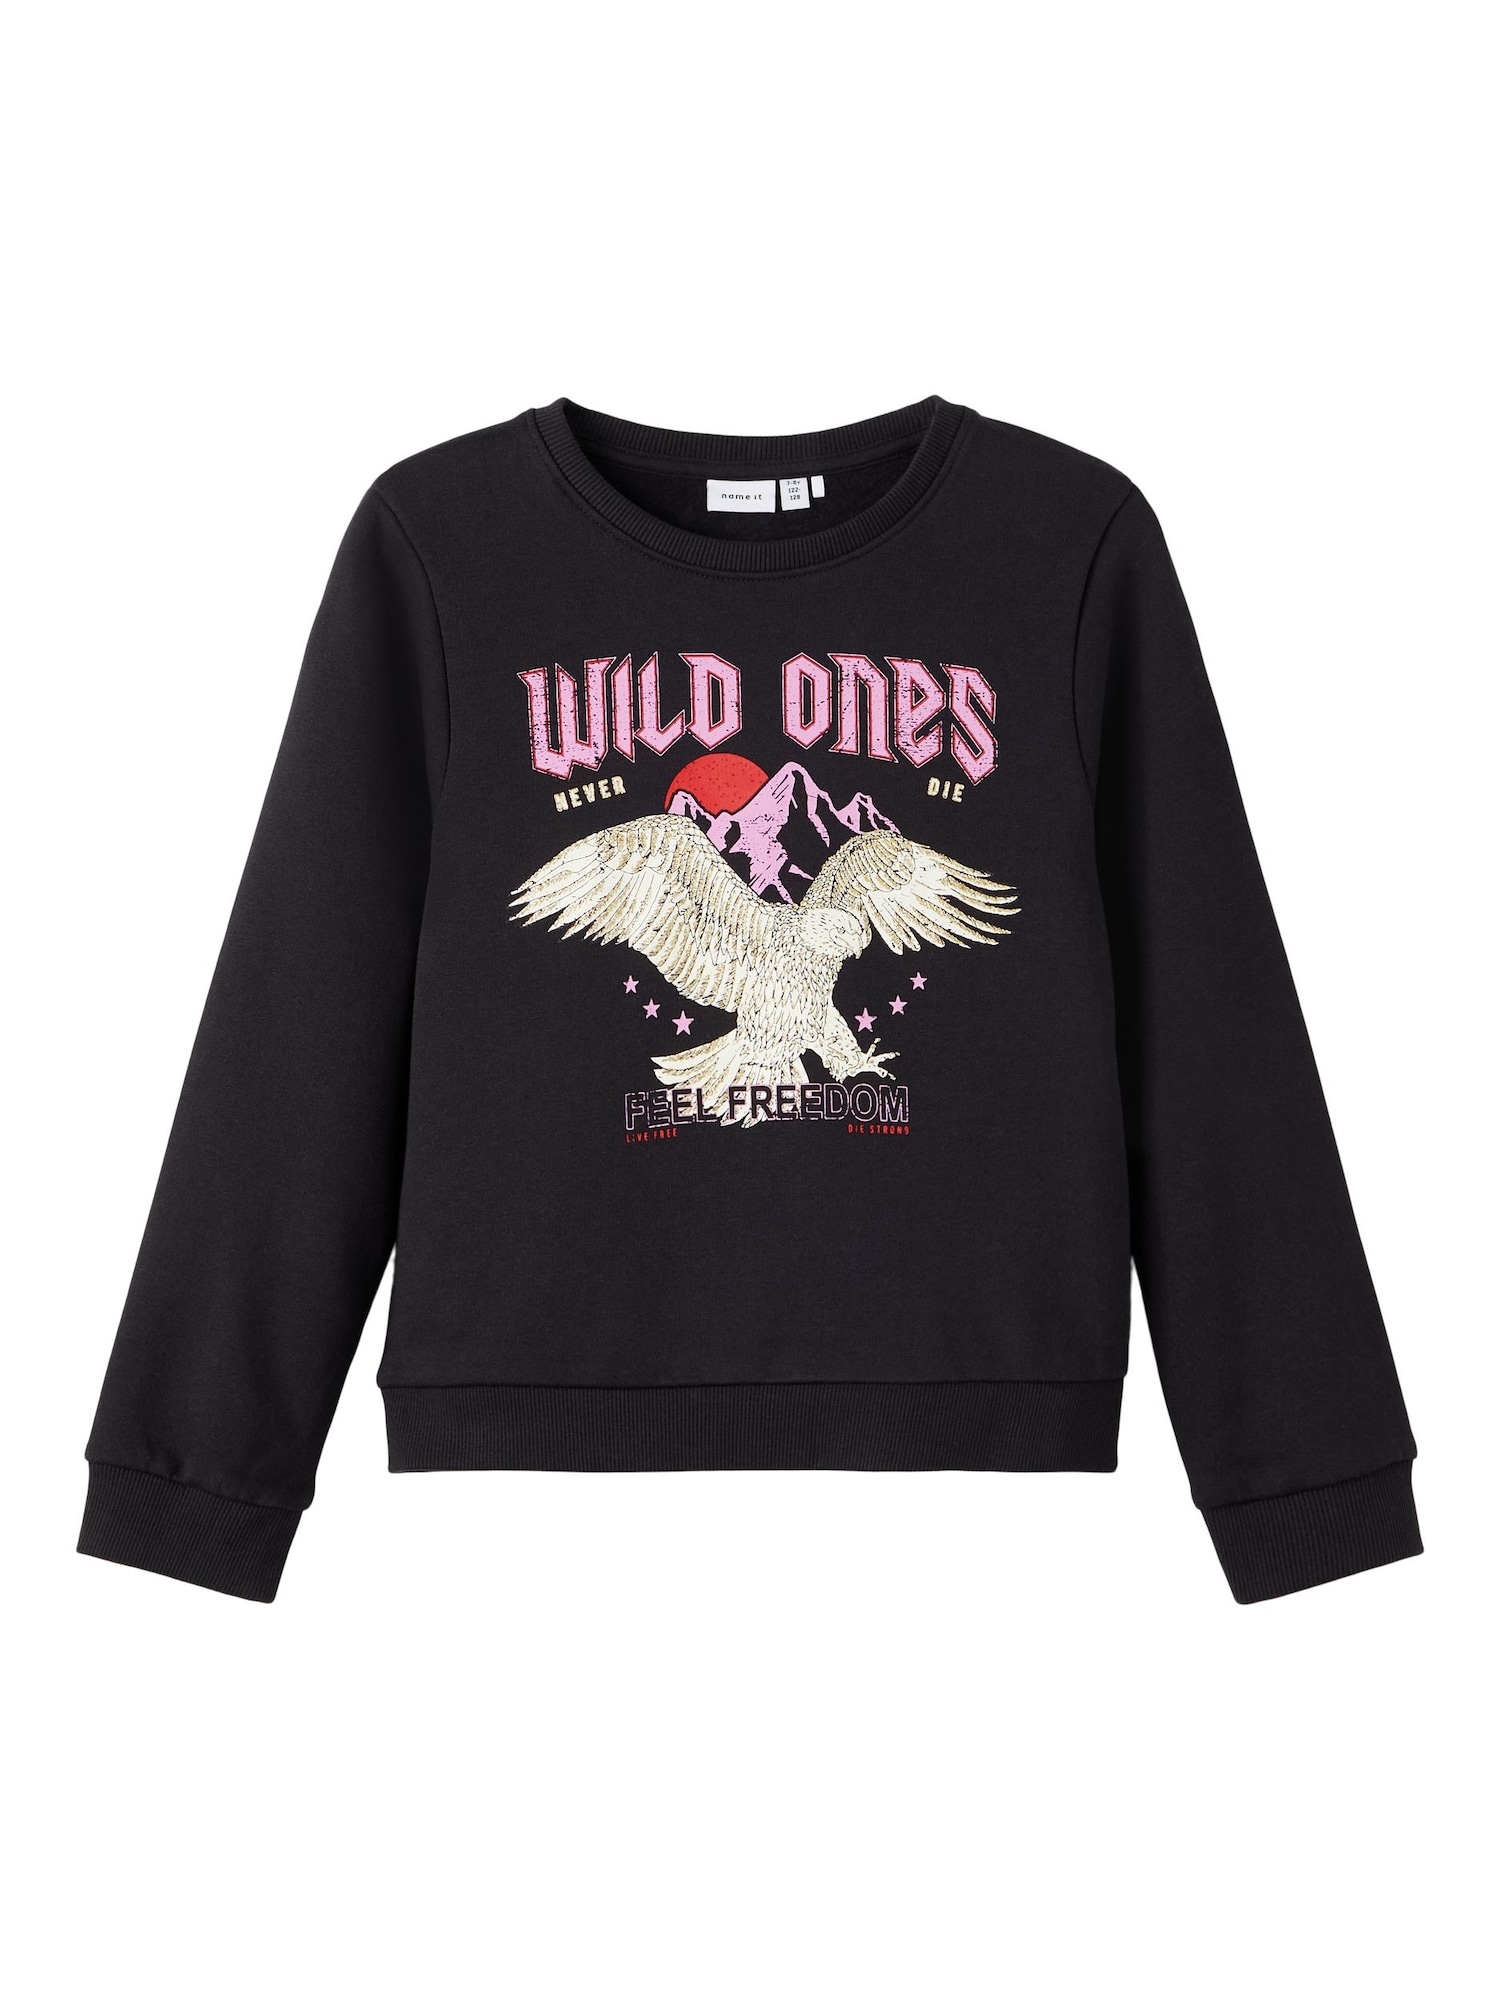 NAME IT Sweater majica 'Wild ones'  bež / roza / svijetloroza / crna